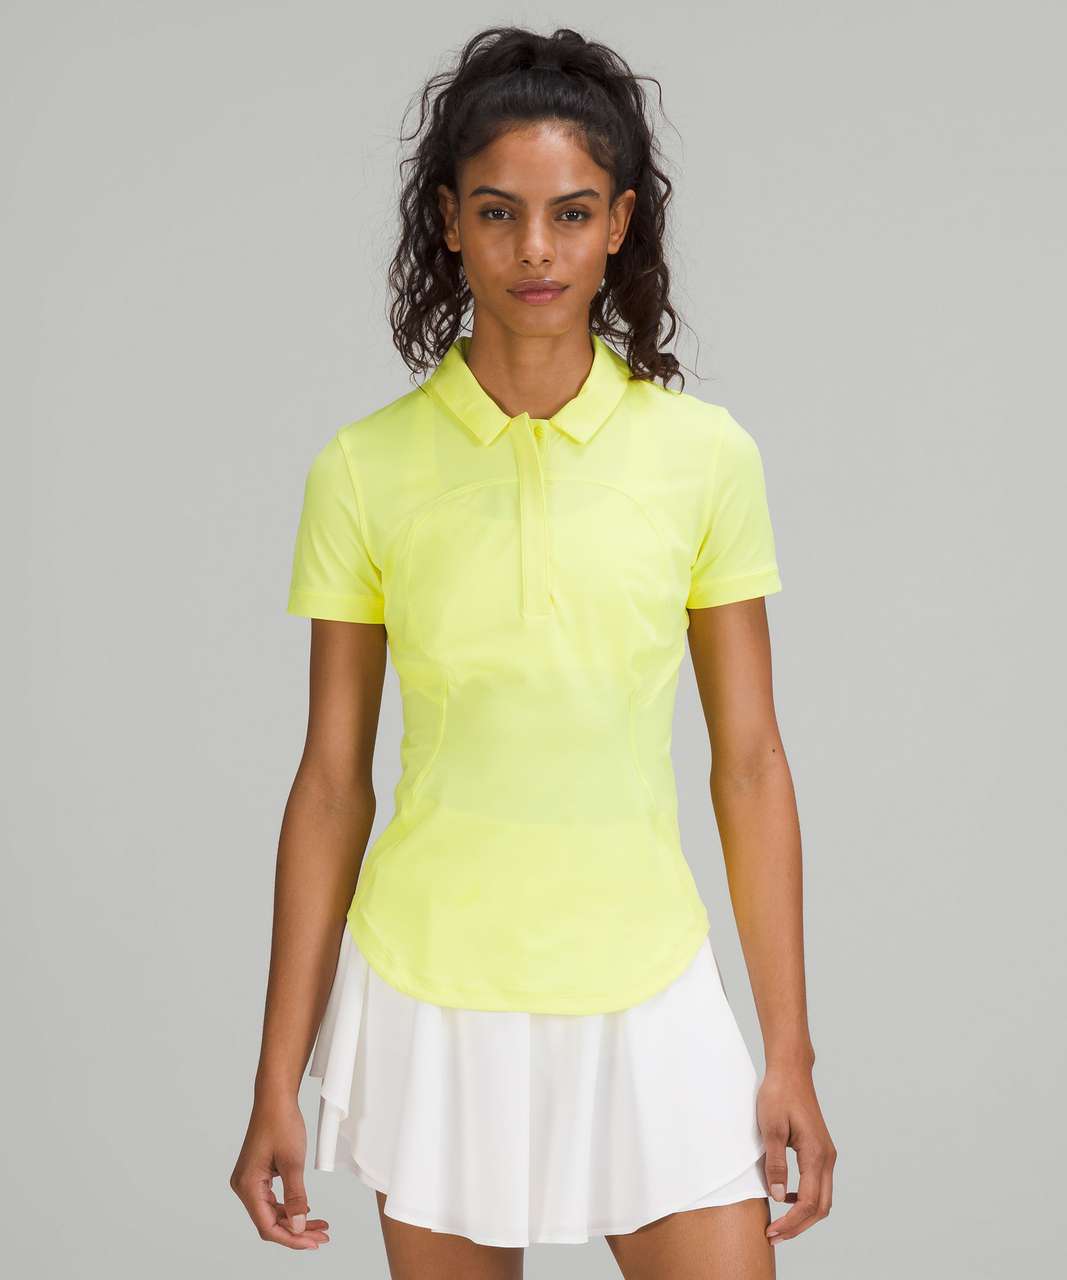 Lululemon Quick-Drying Short Sleeve Polo Shirt - Electric Lemon 